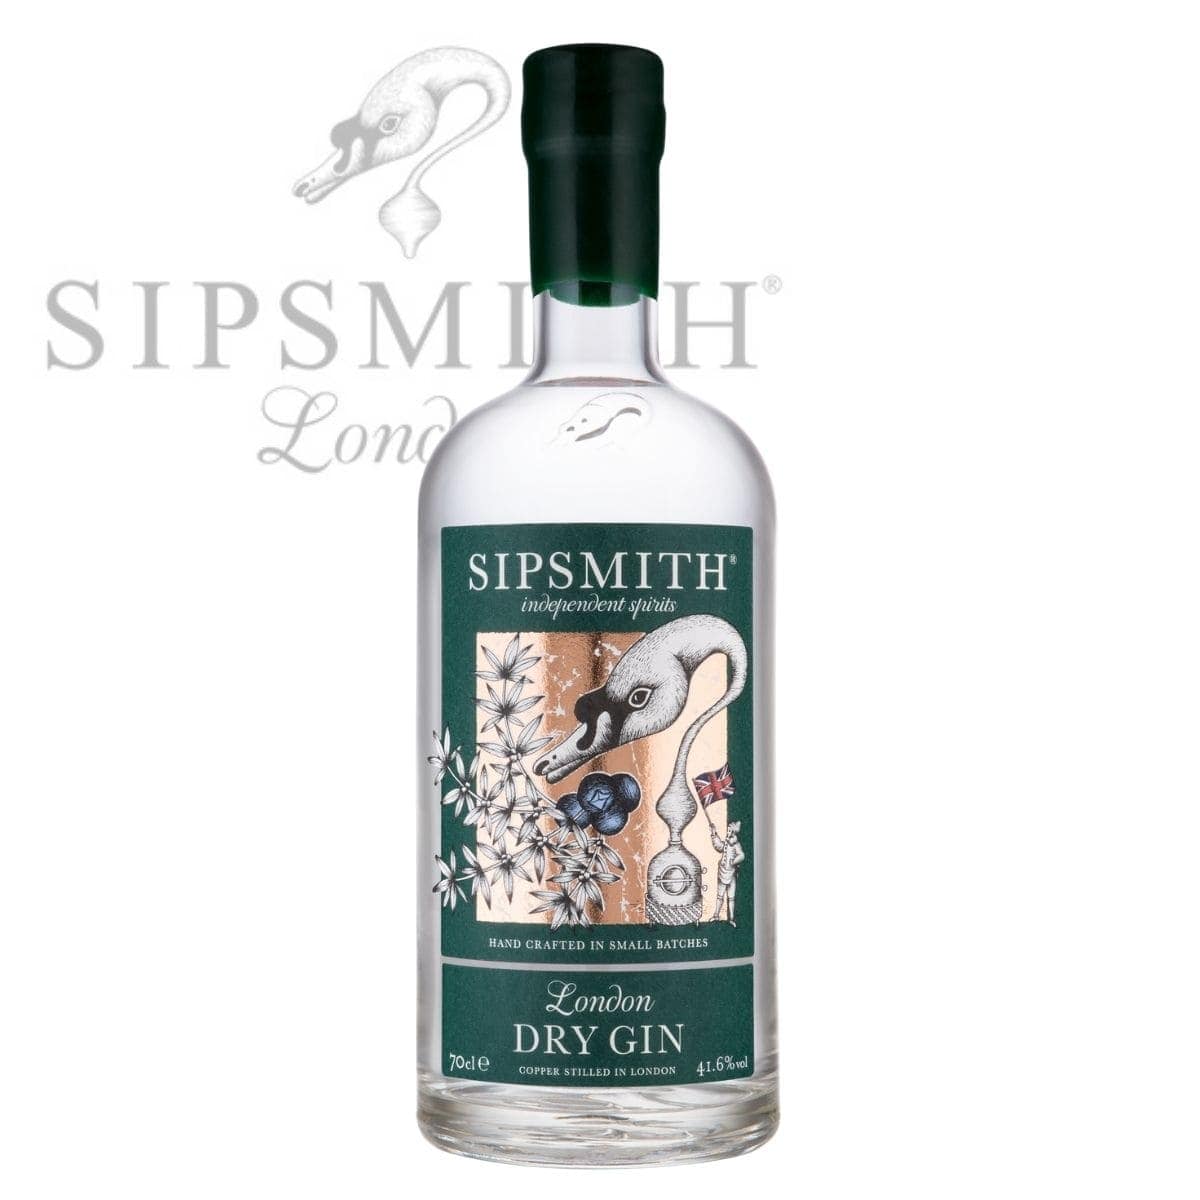 Sipsmith London Dry Gin | online kaufen bei Drinkevolution.de